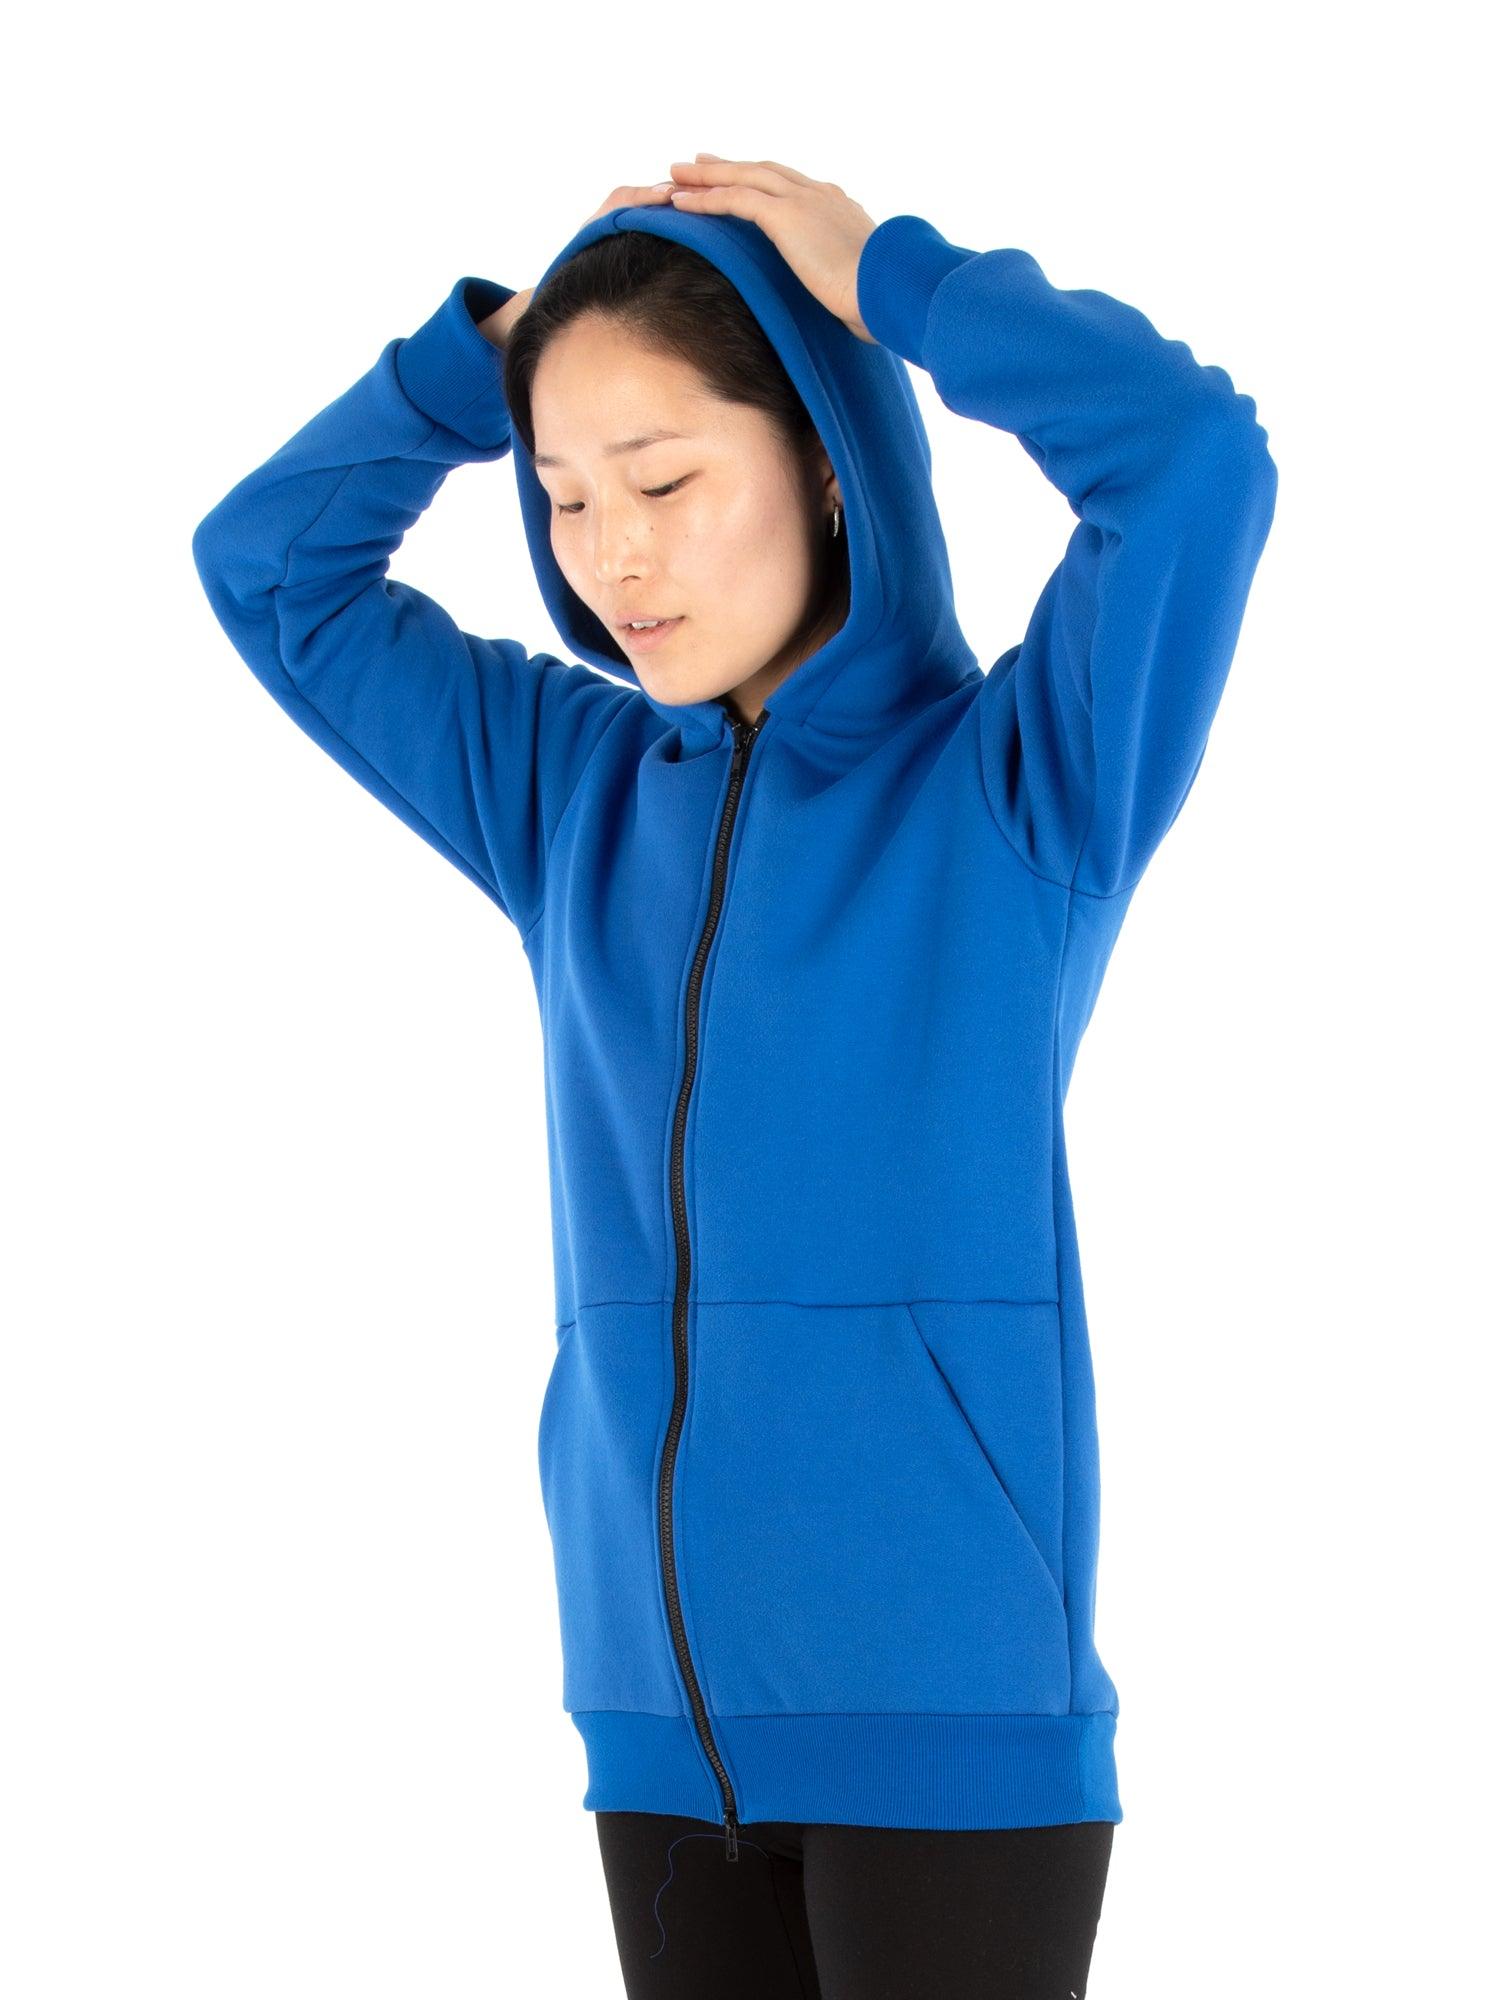 Danaelle hoodie in blue sweatshirt fleece